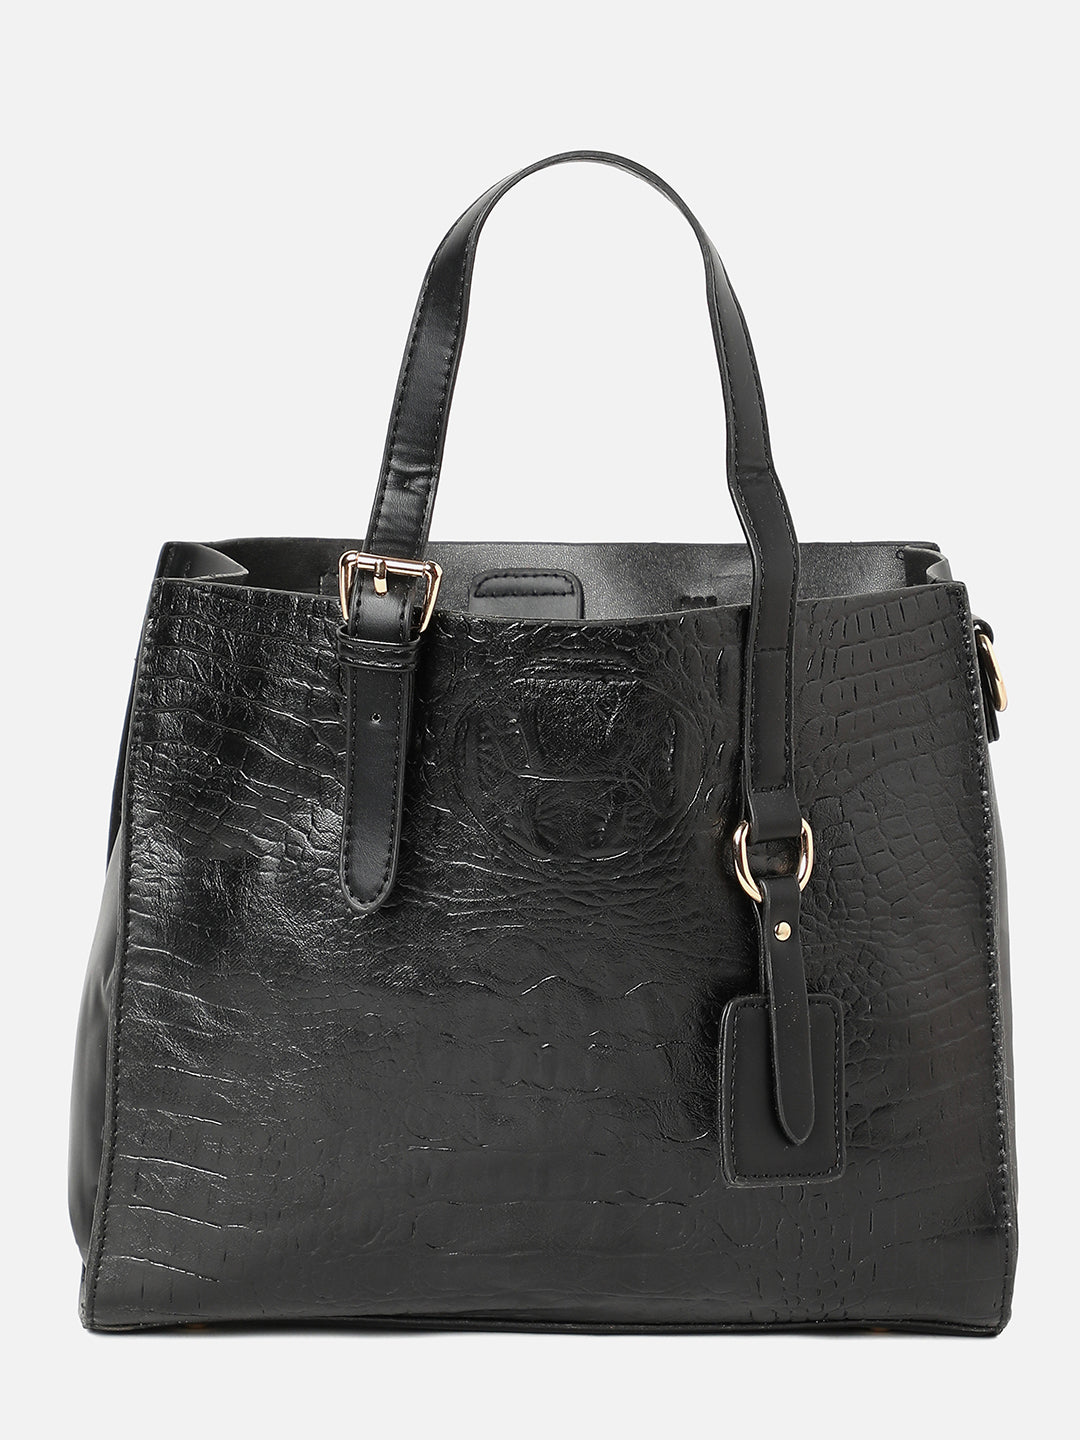 Phantom Black Handbag Set